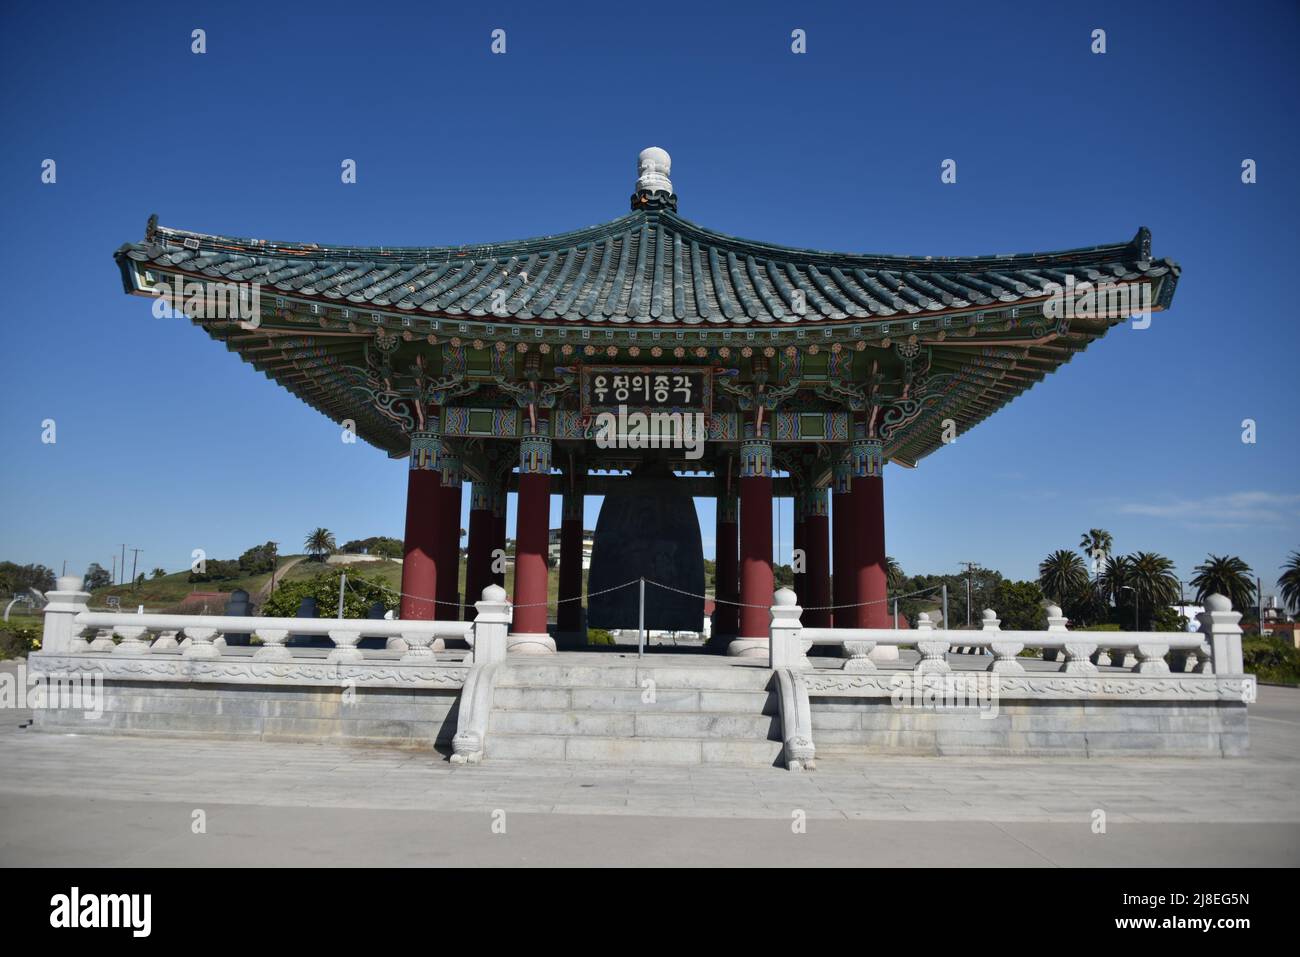 San Pedro, CA. ÉTATS-UNIS 2/28/2022. Cloche de l'amitié coréenne. Don de 1976 par la République de Corée au peuple de Los Angeles, CA. La cloche pèse 17 tonnes. Banque D'Images